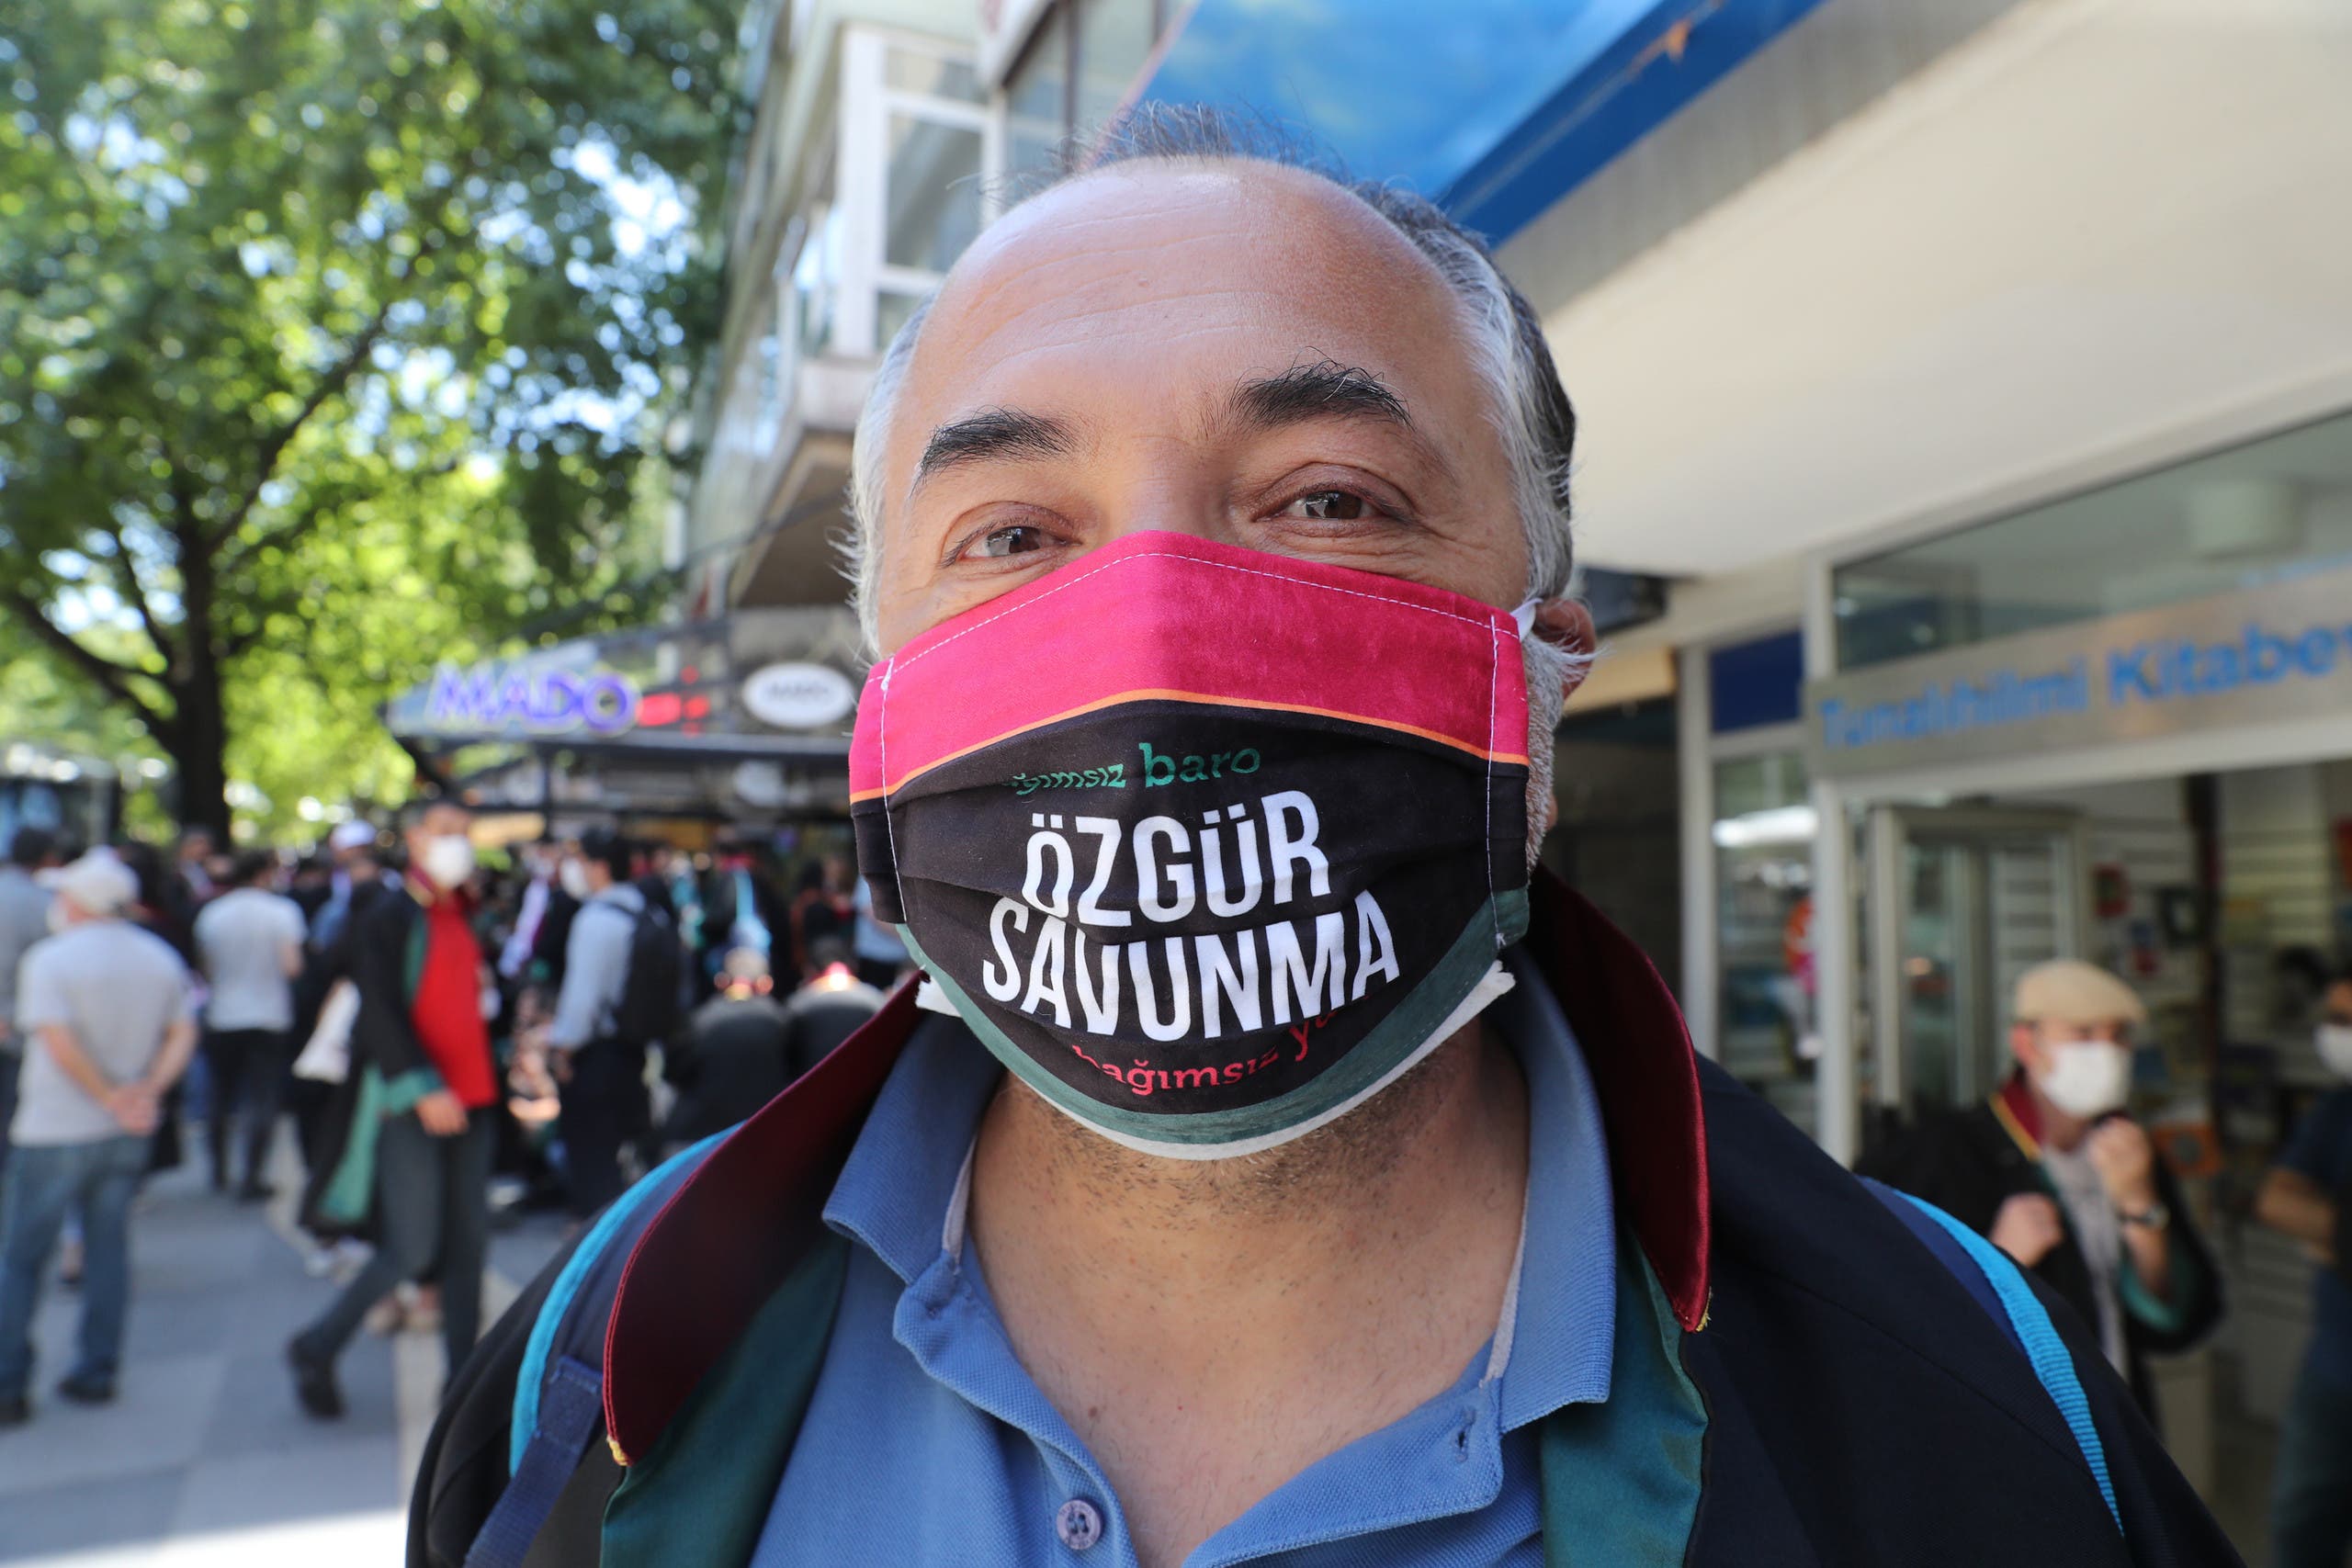 محامي يعتصم أمام قصر العدل باسطنبول وكتب على كمامته 